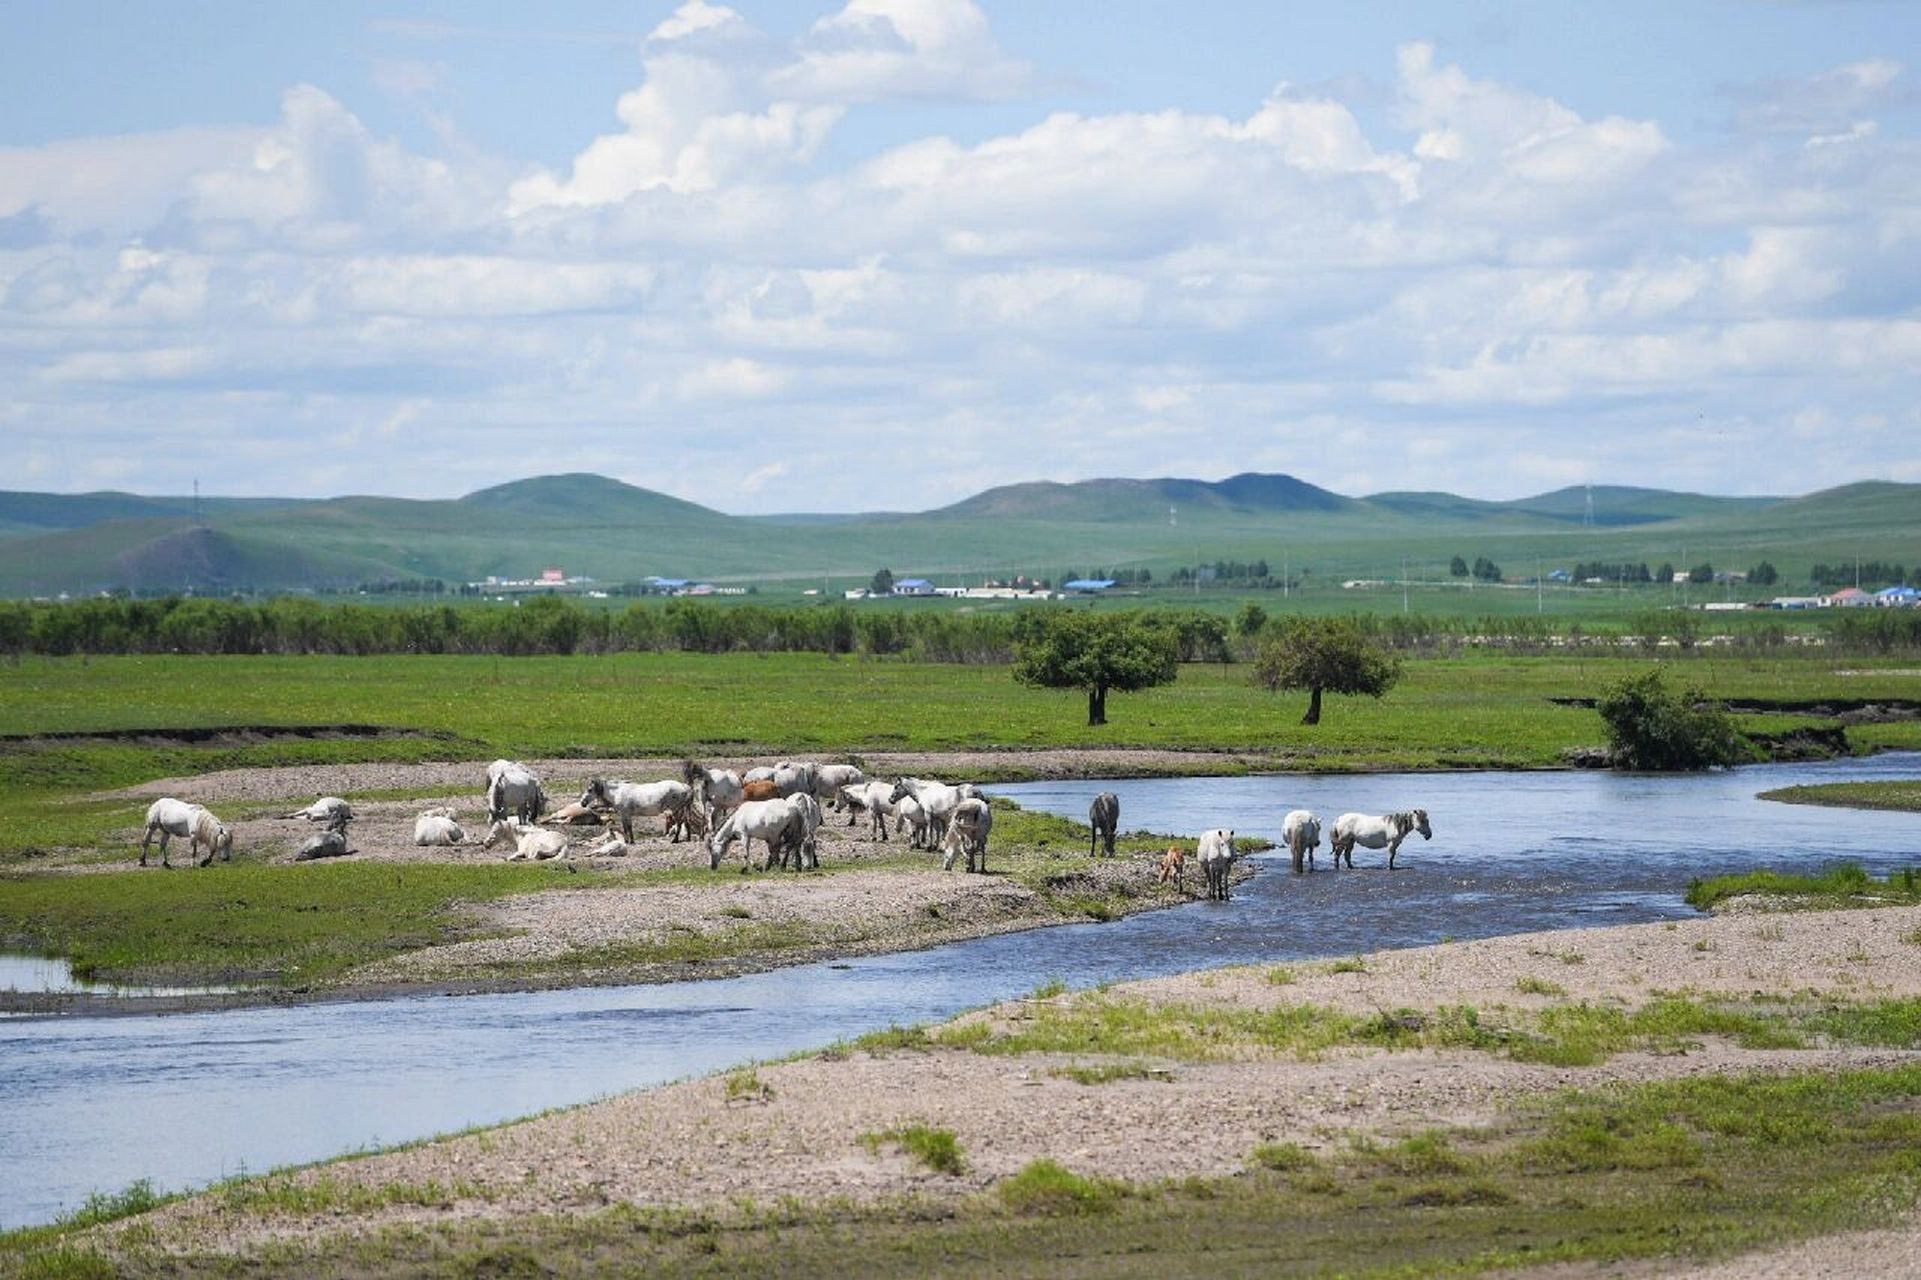 乌兰毛都草原,让人心醉神迷的地方 夏日时节,位于内蒙古自治区兴安盟